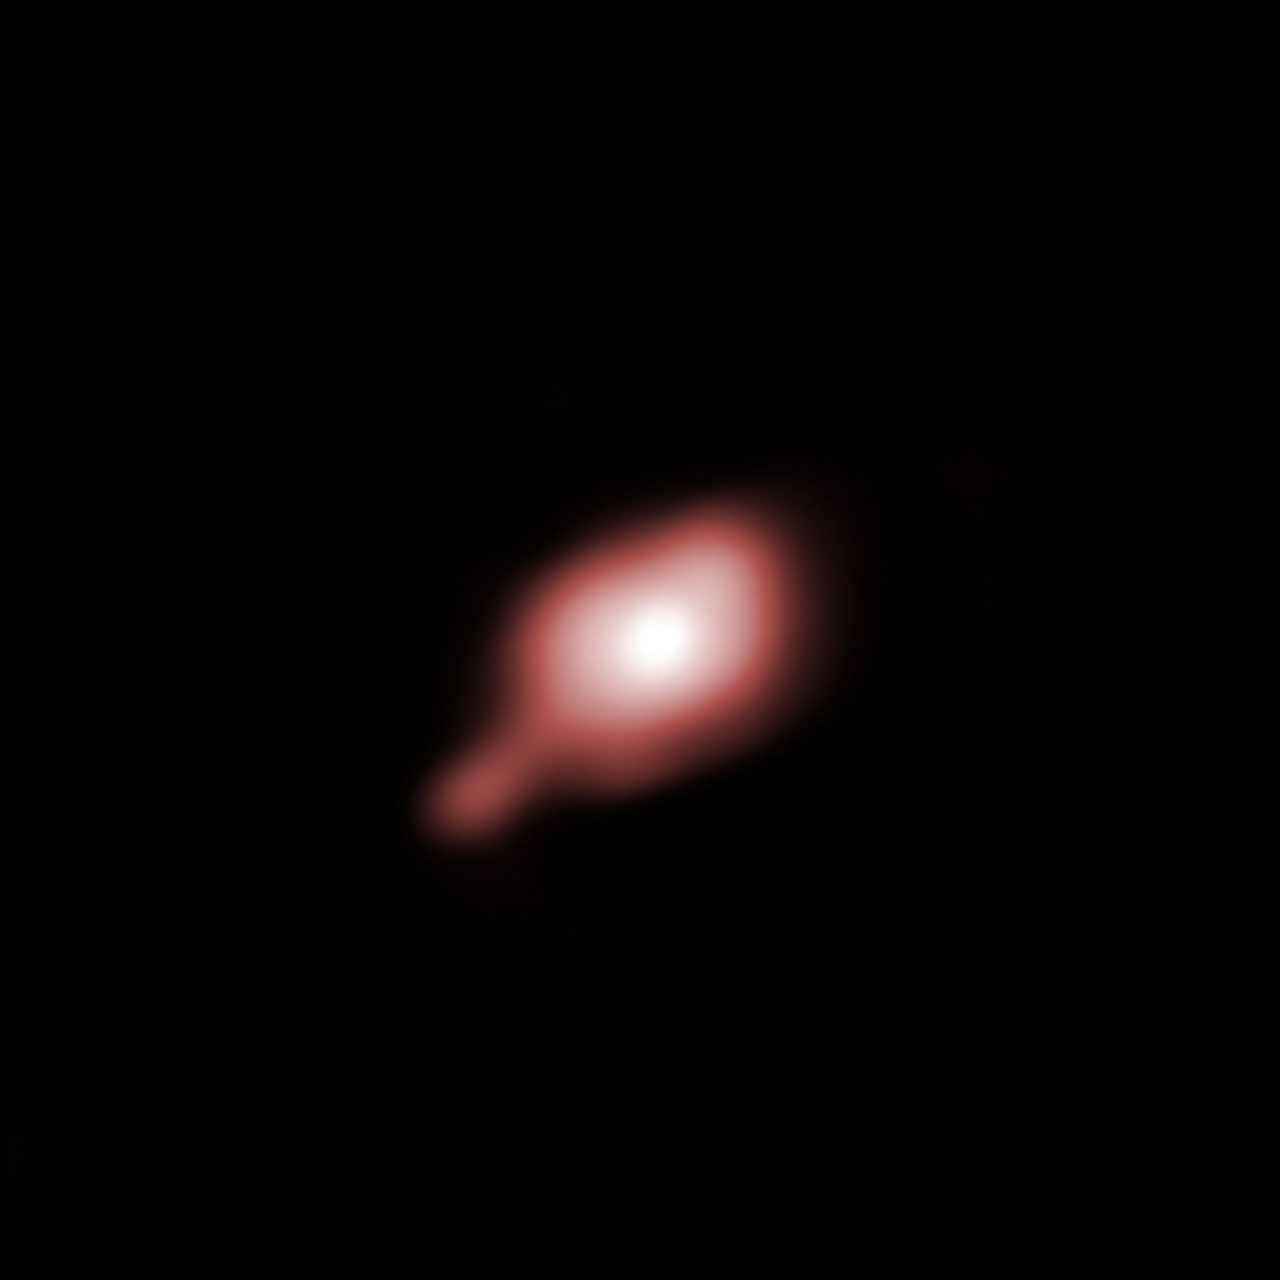 Le regard perçant de AMBER révèle à l'intérieur de IRAS 13481-6124 la présence d'un disque de poussières entourant une étoile de 20 fois la masse du Soleil. L'image a été reconstruite à partir de la méthode de l'interférométrie consistant à combiner les images de plusieurs télescopes comme s'il n'en existait qu'un seul de grande taille. Dans le cas présent, tout se passe comme si les astronomes disposaient d'un télescope de 85 mètres de diamètre observant dans l'infrarouge proche. Crédit : ESO-S. Kraus